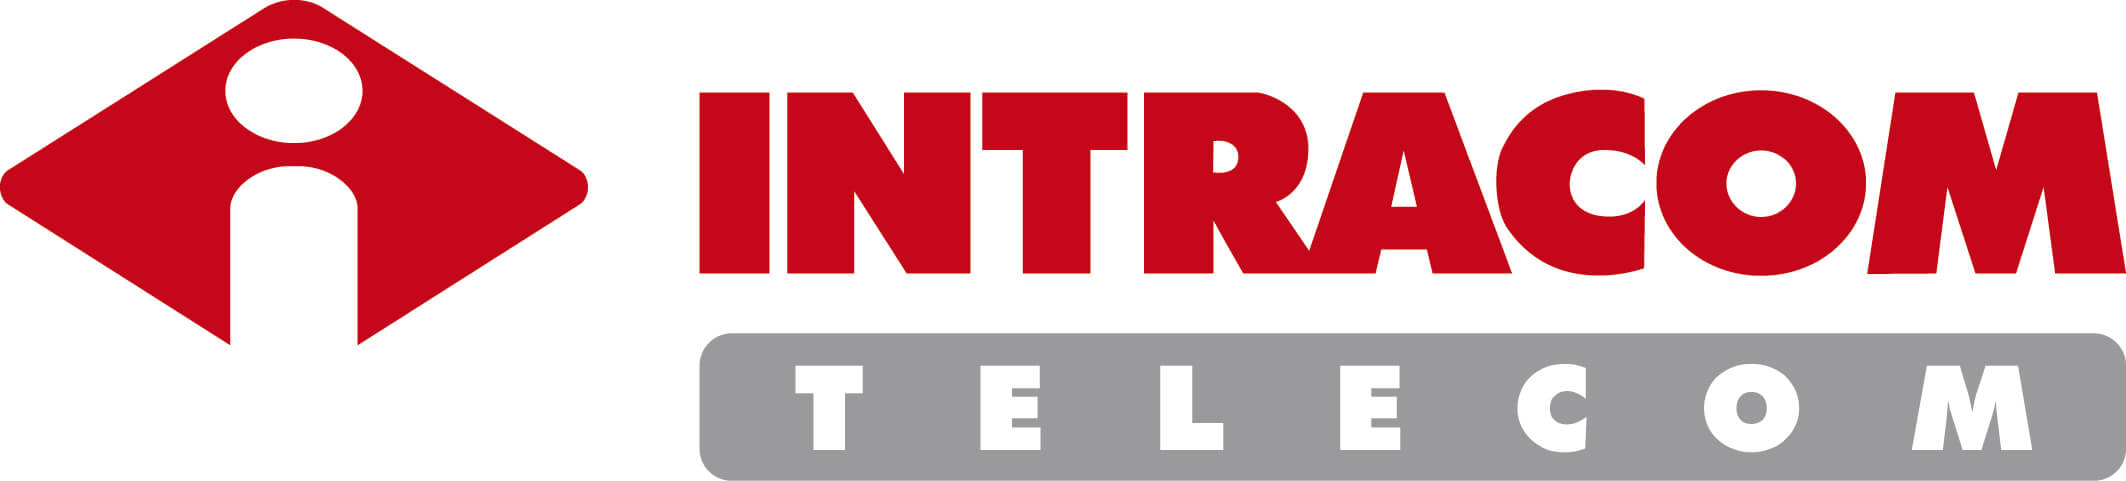 INTRACOM-TELECOM_logo